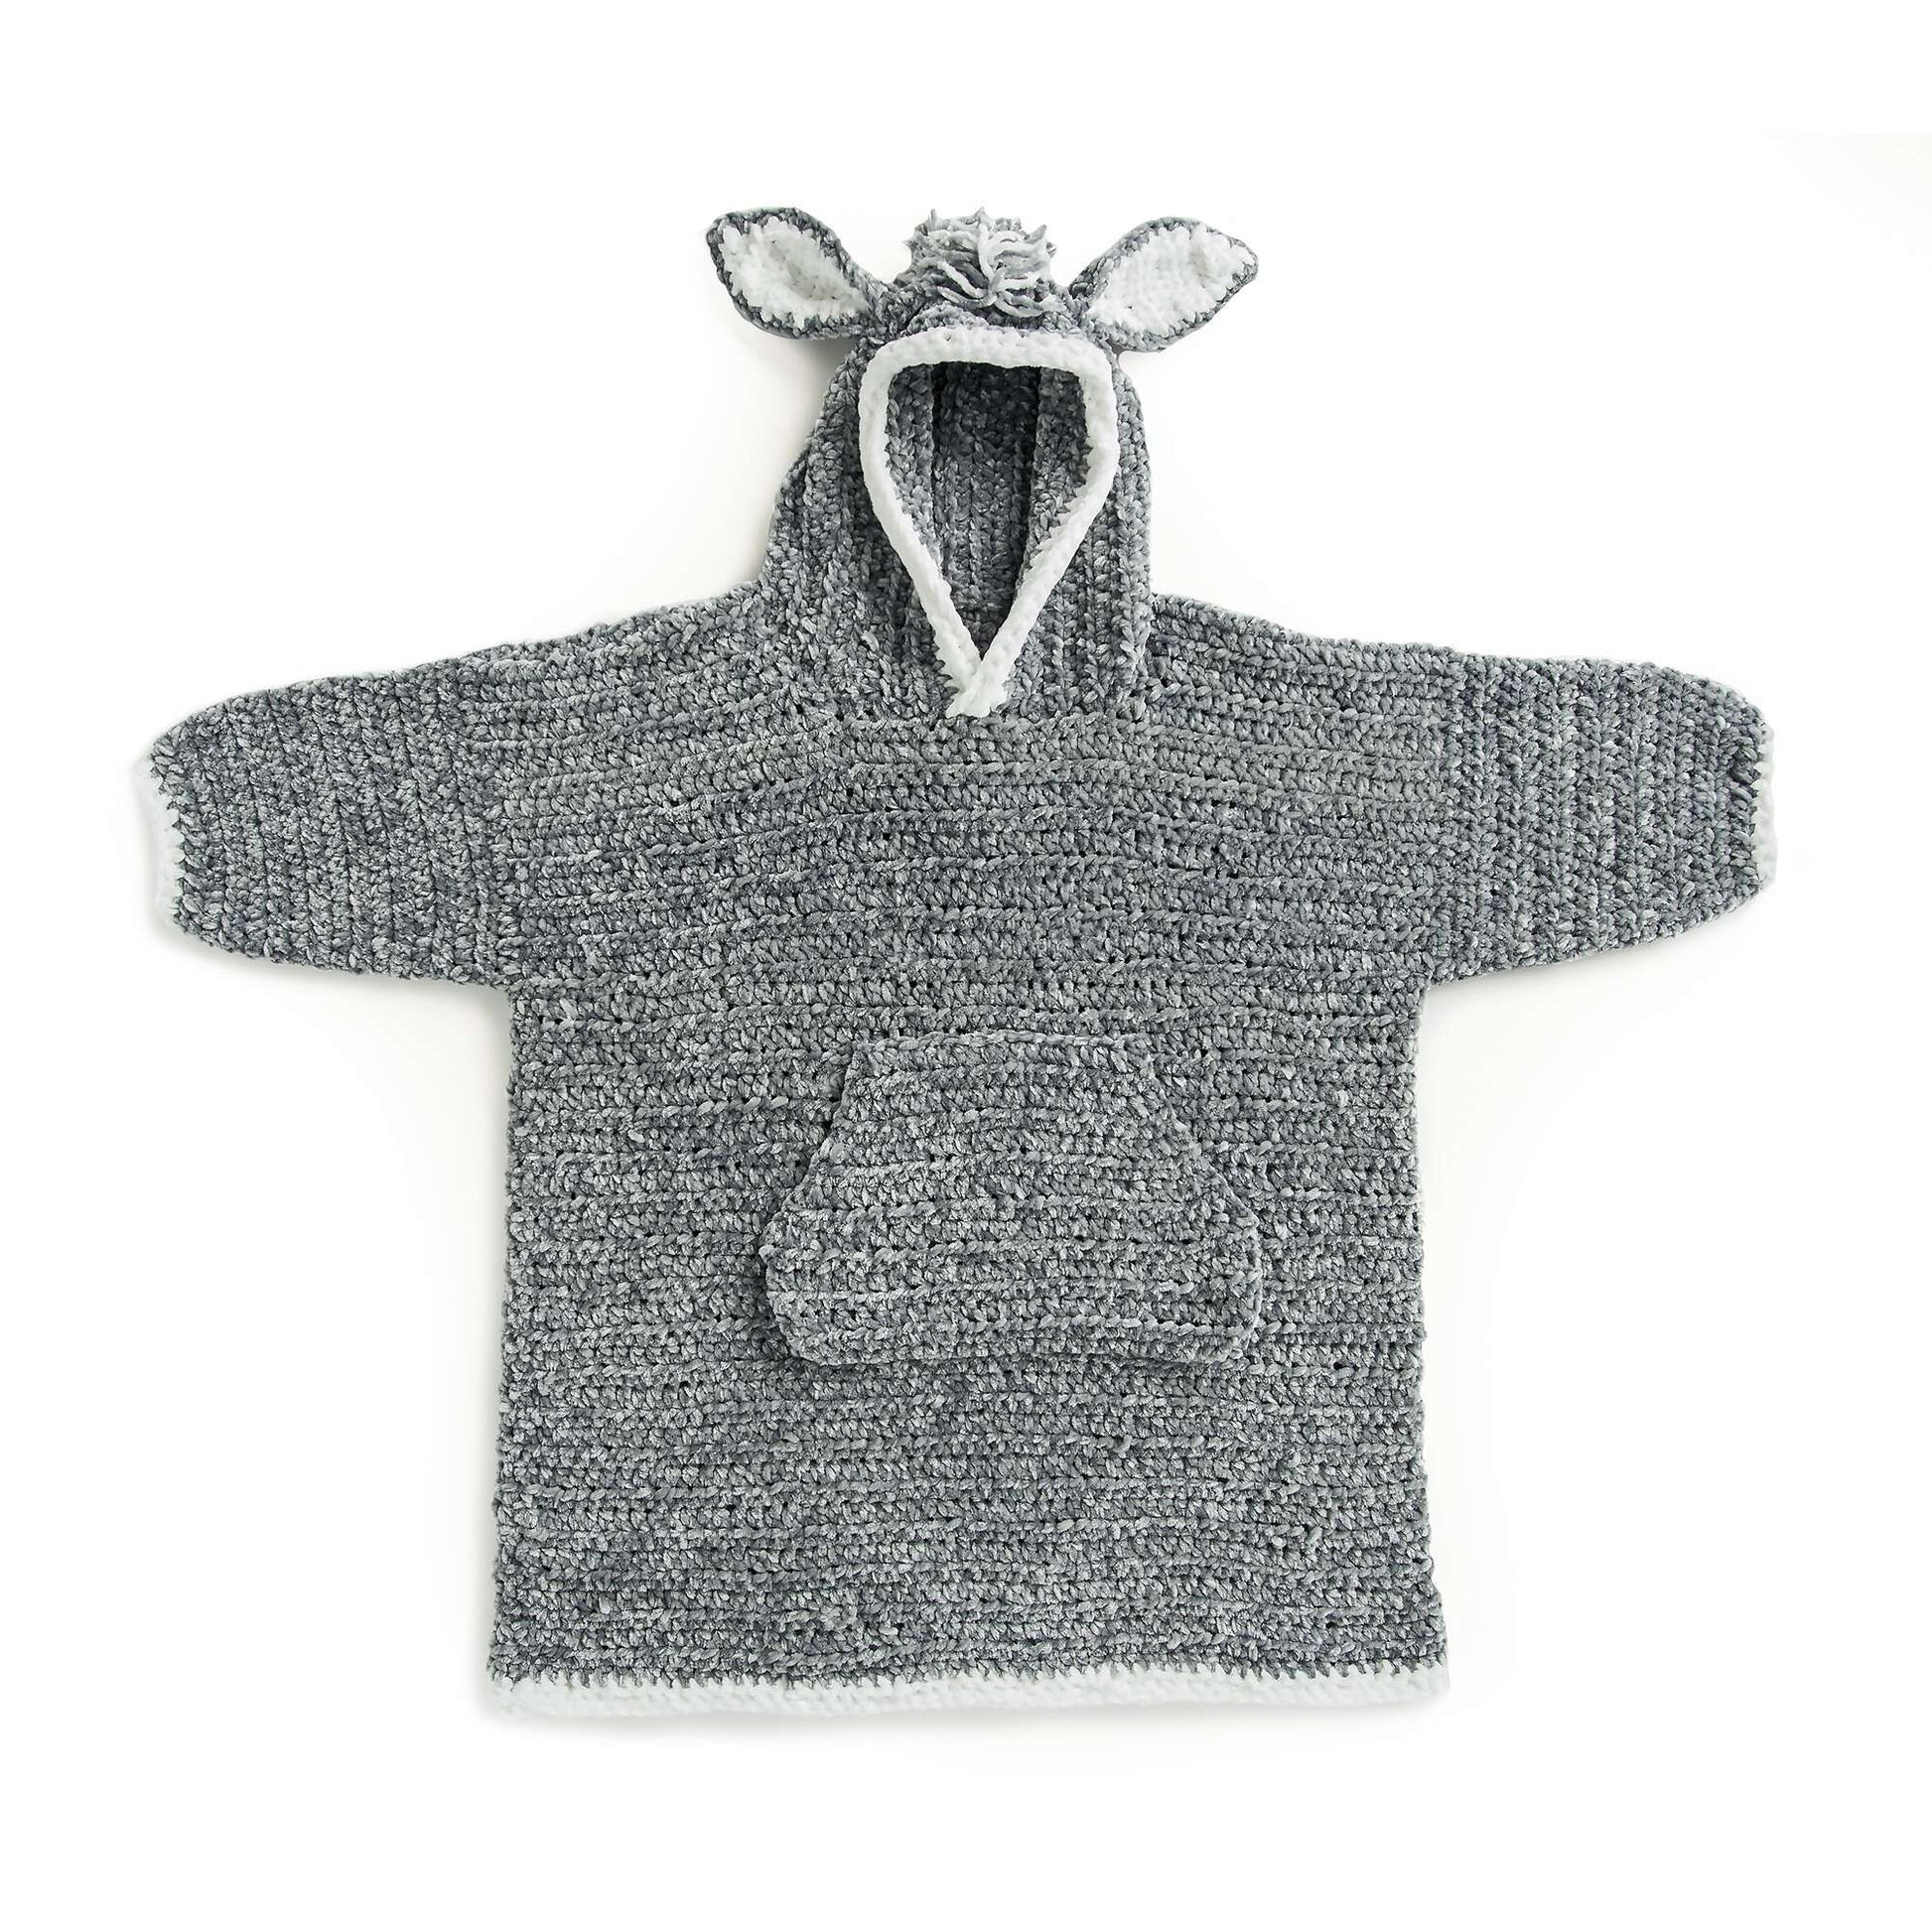 Bernat Funky Donkey Kids Crochet Blanket Hoodie Pattern